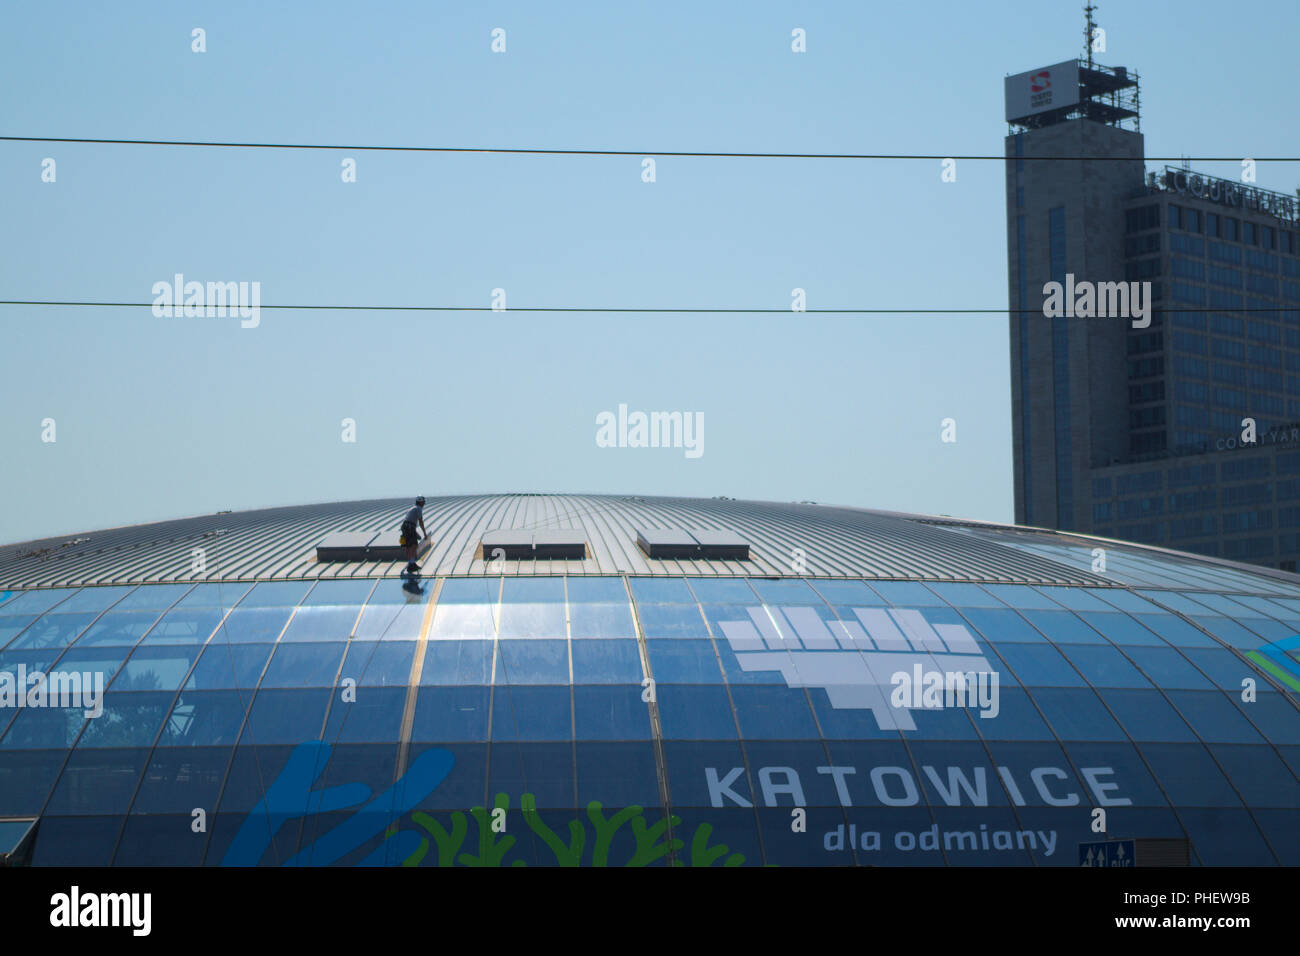 Stazione dei Tram di tetto sotto manutenzione - Katowice in Polonia. Foto Stock